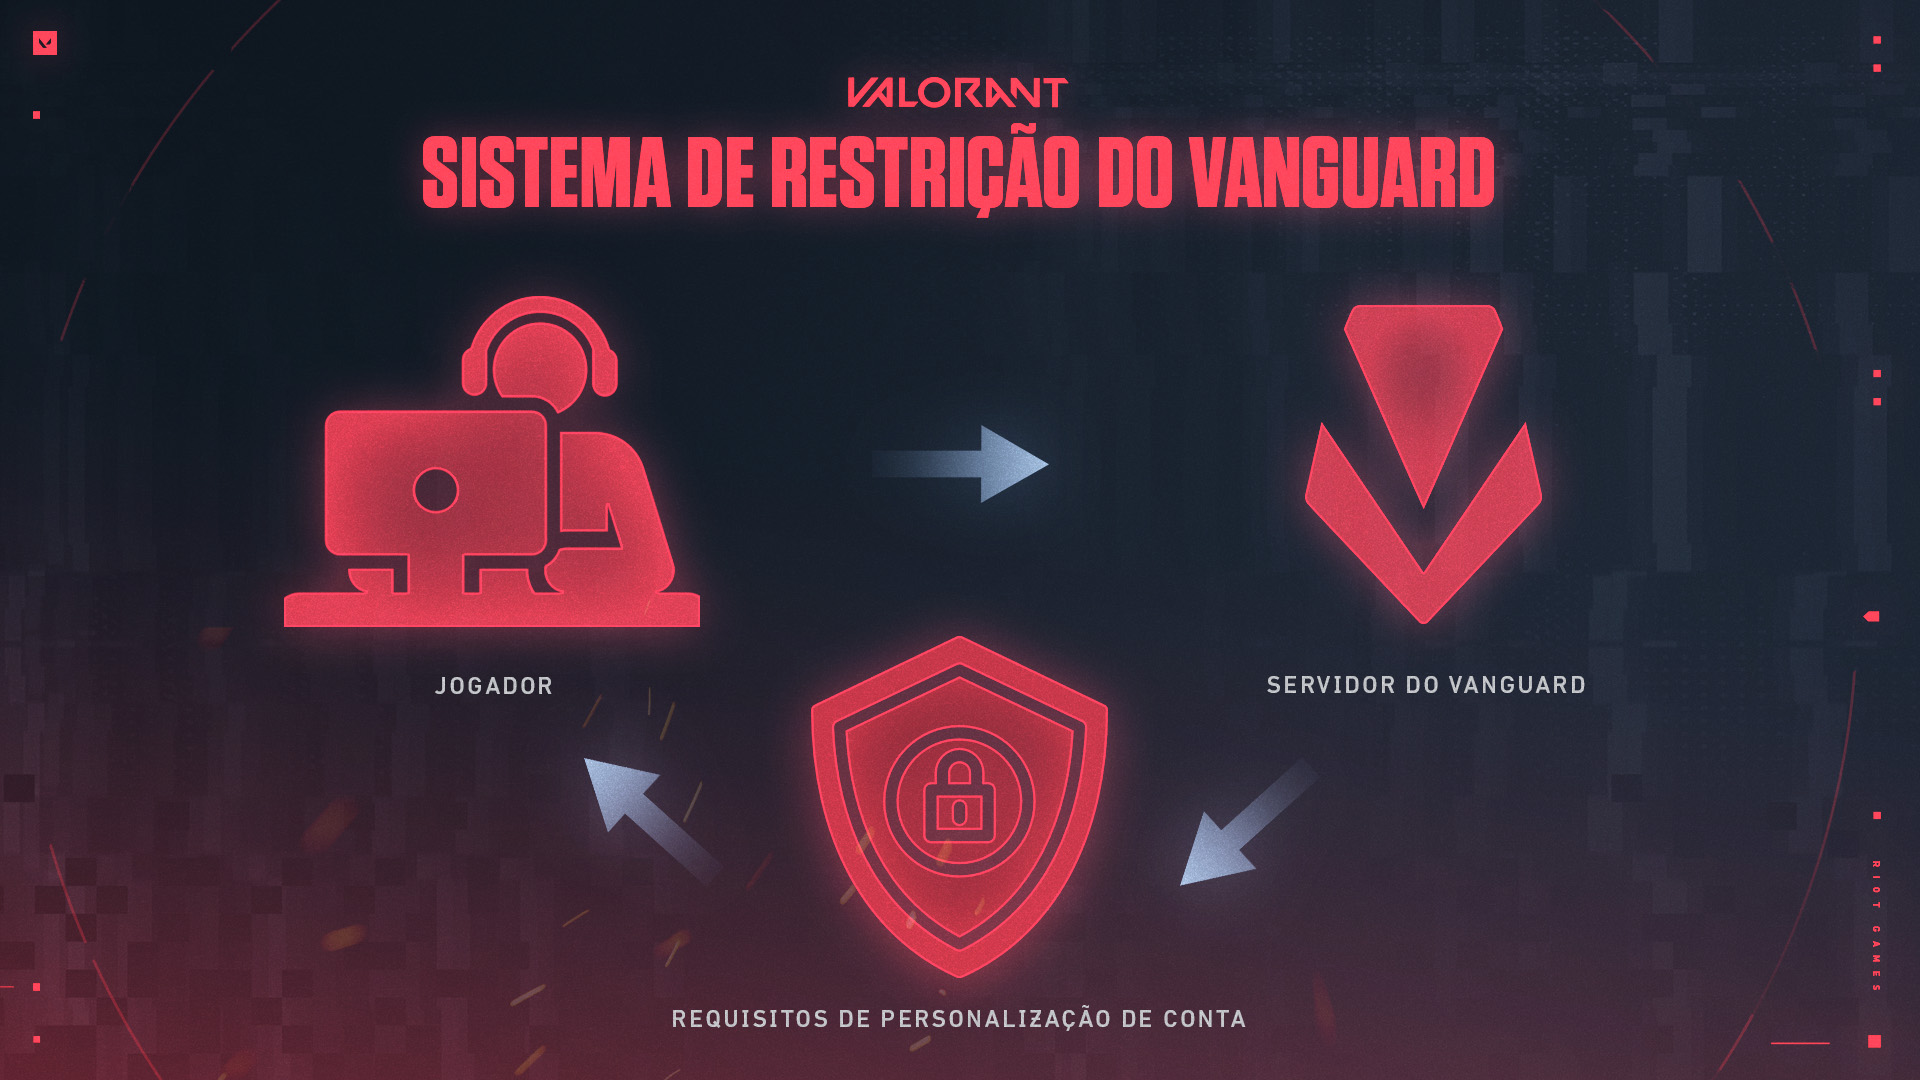 Val_Vanguard_Restriction_System_pt_BR.jpg